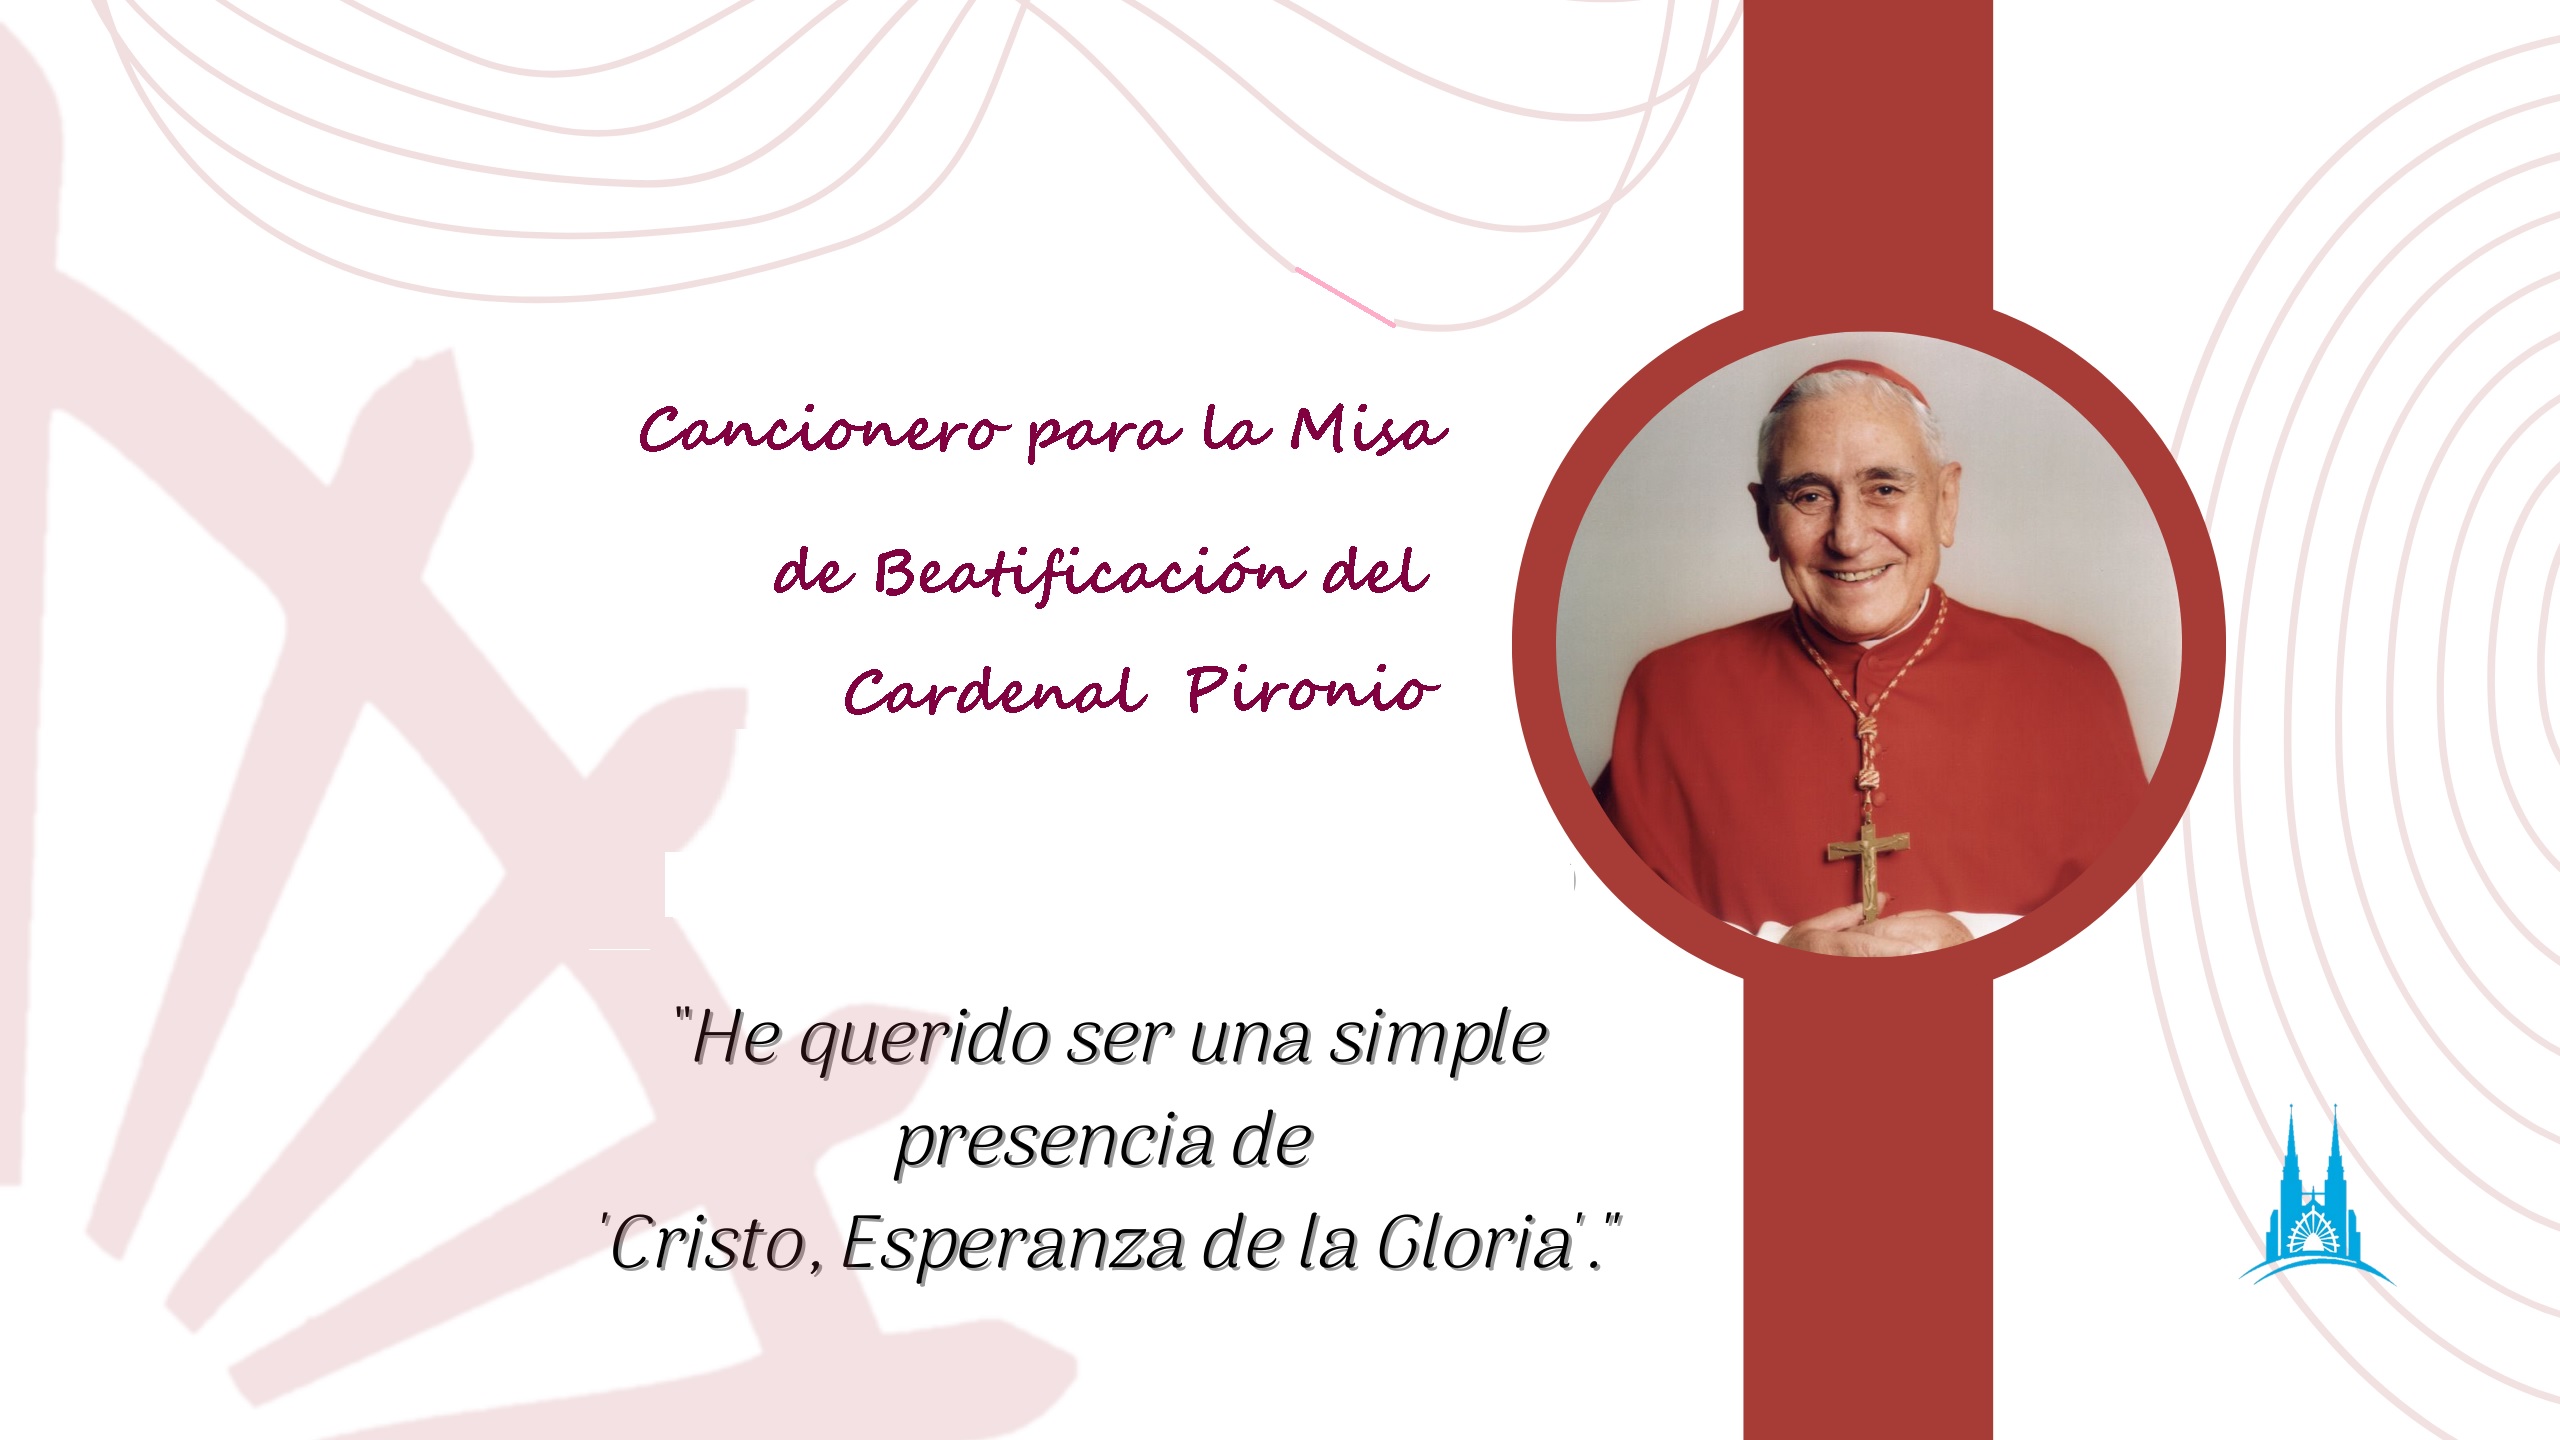 Cancionero para la Misa de Beatificación del Cardenal Pironio